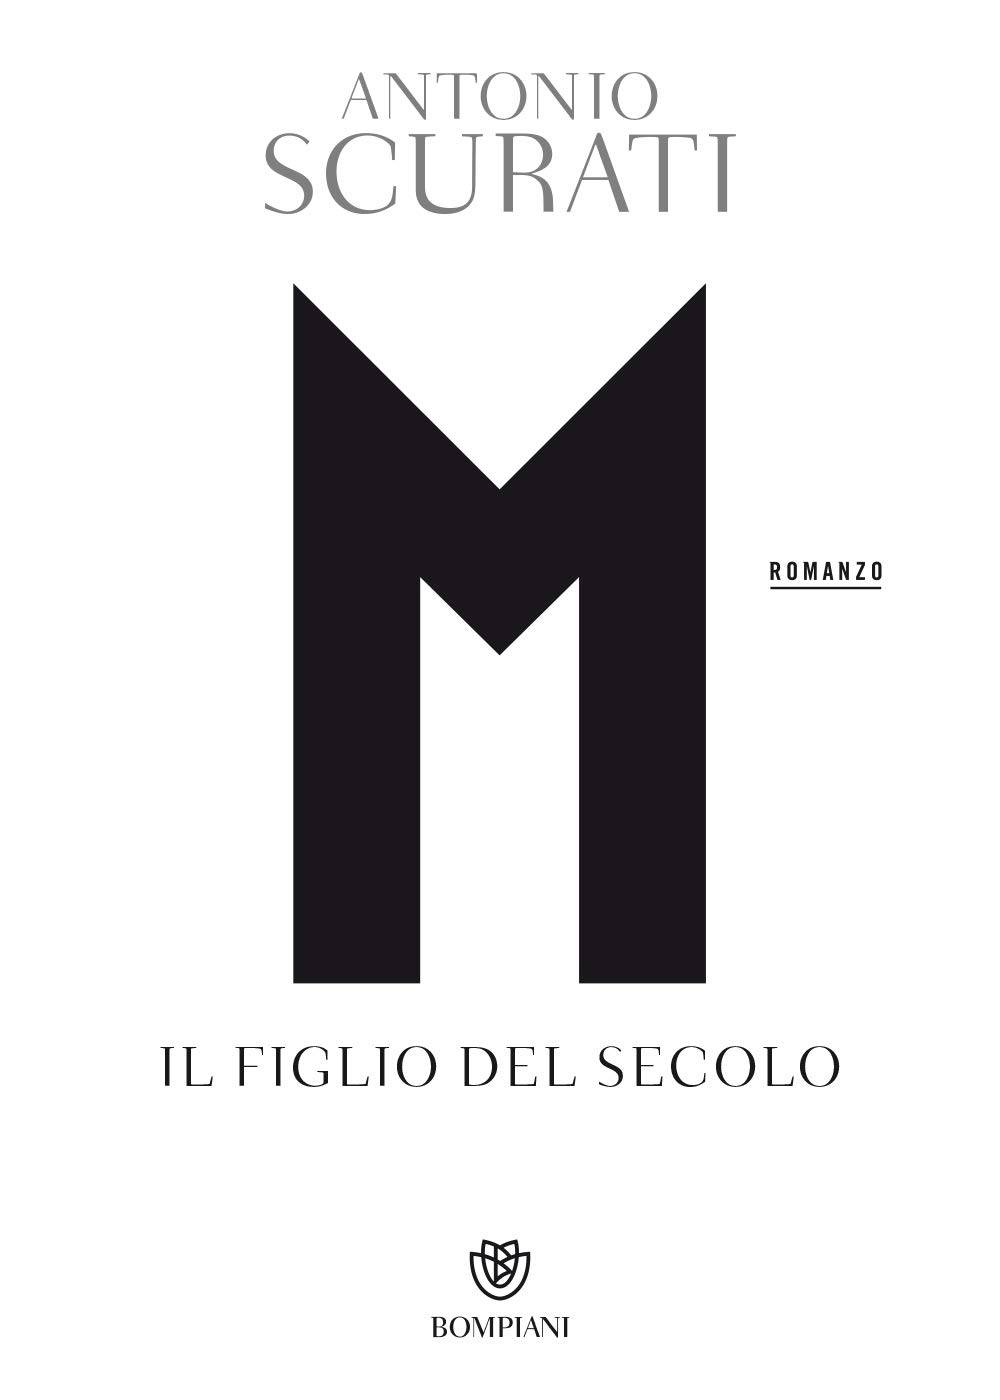 Antonio Scurati "filma" Mussolini senza pregiudizi